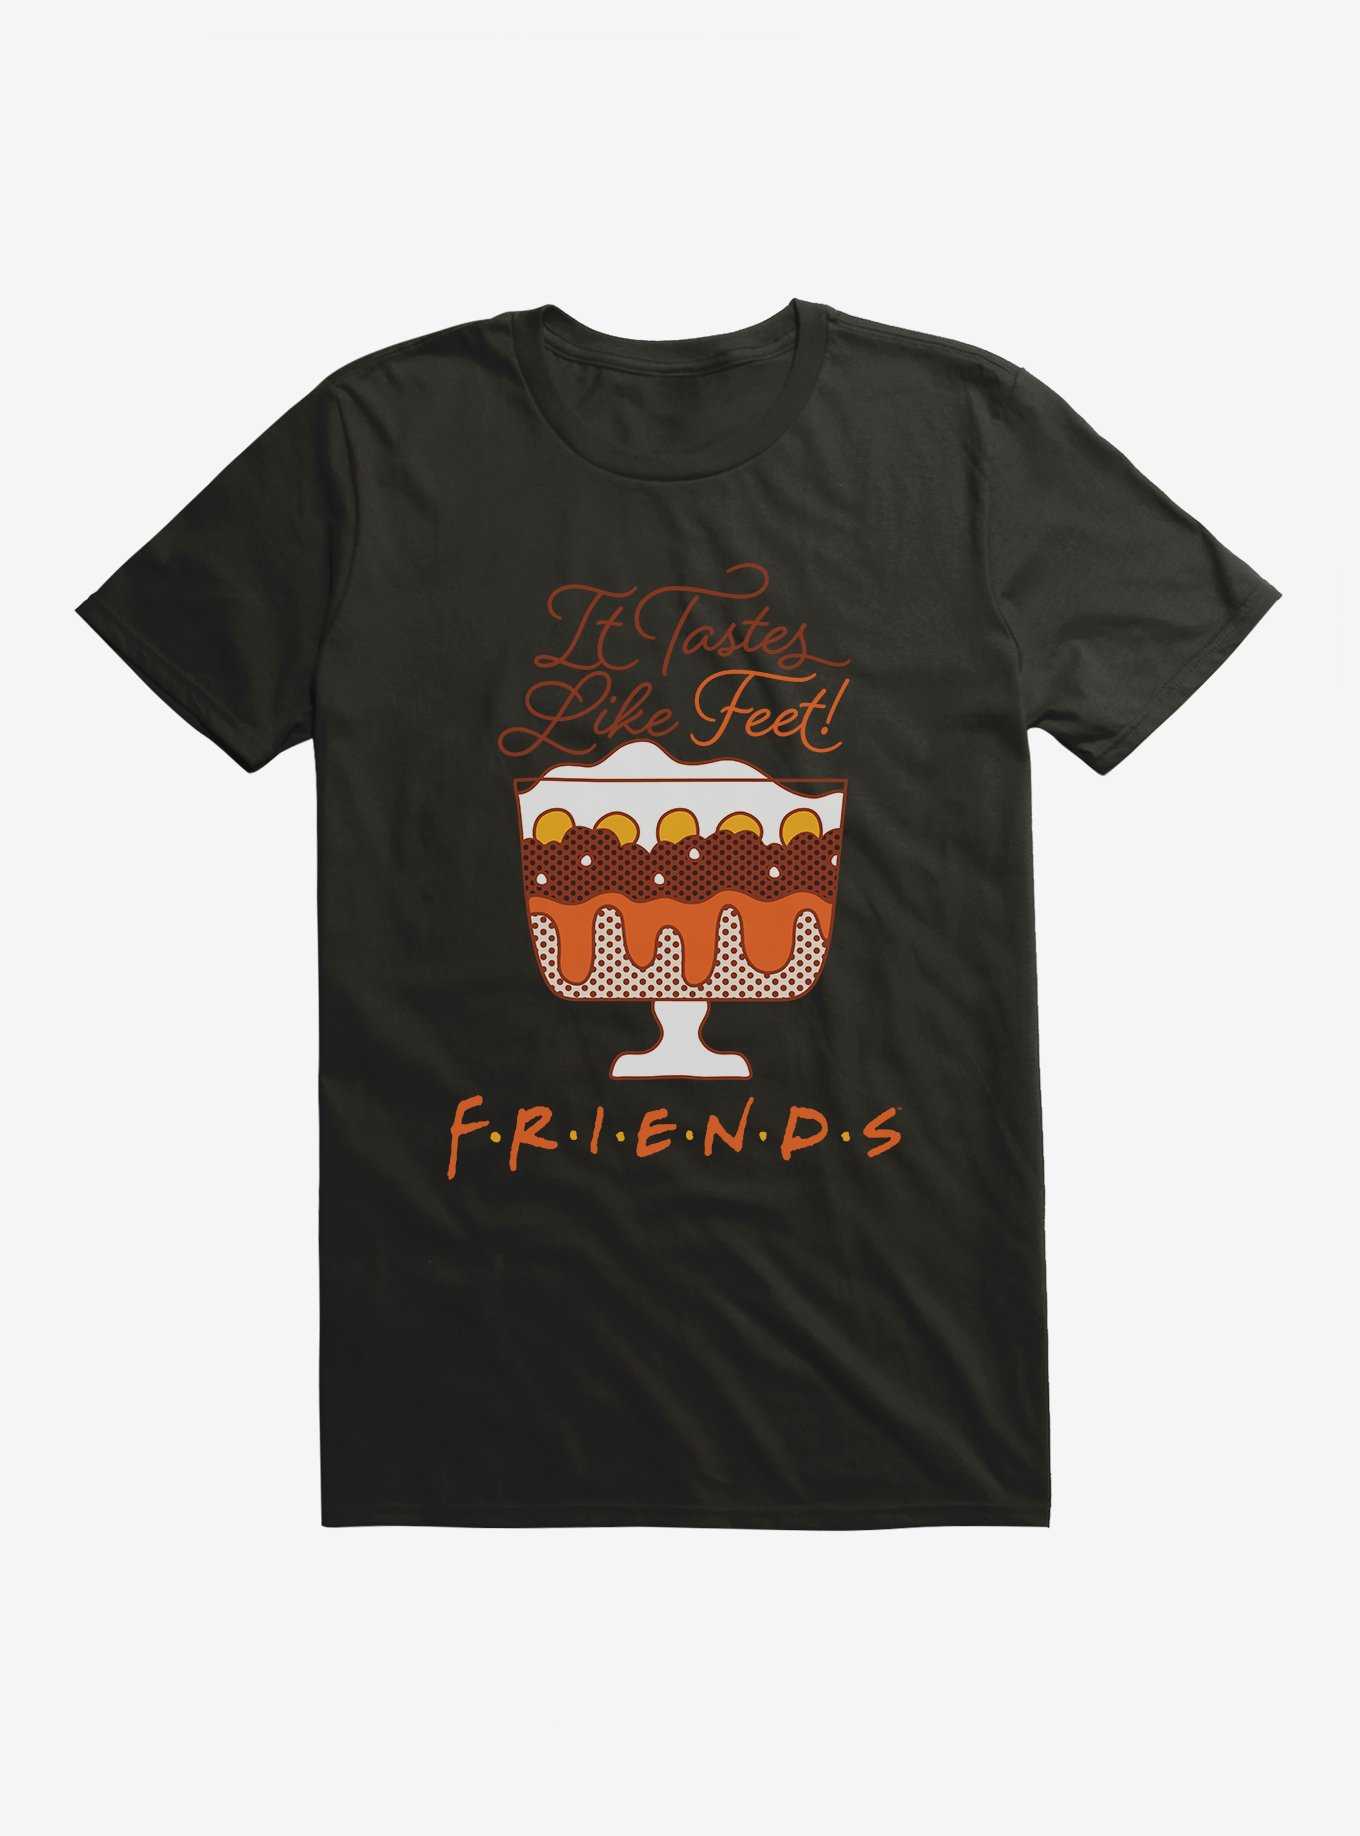 Friends Trifle Tastes Like Feet T-Shirt, , hi-res